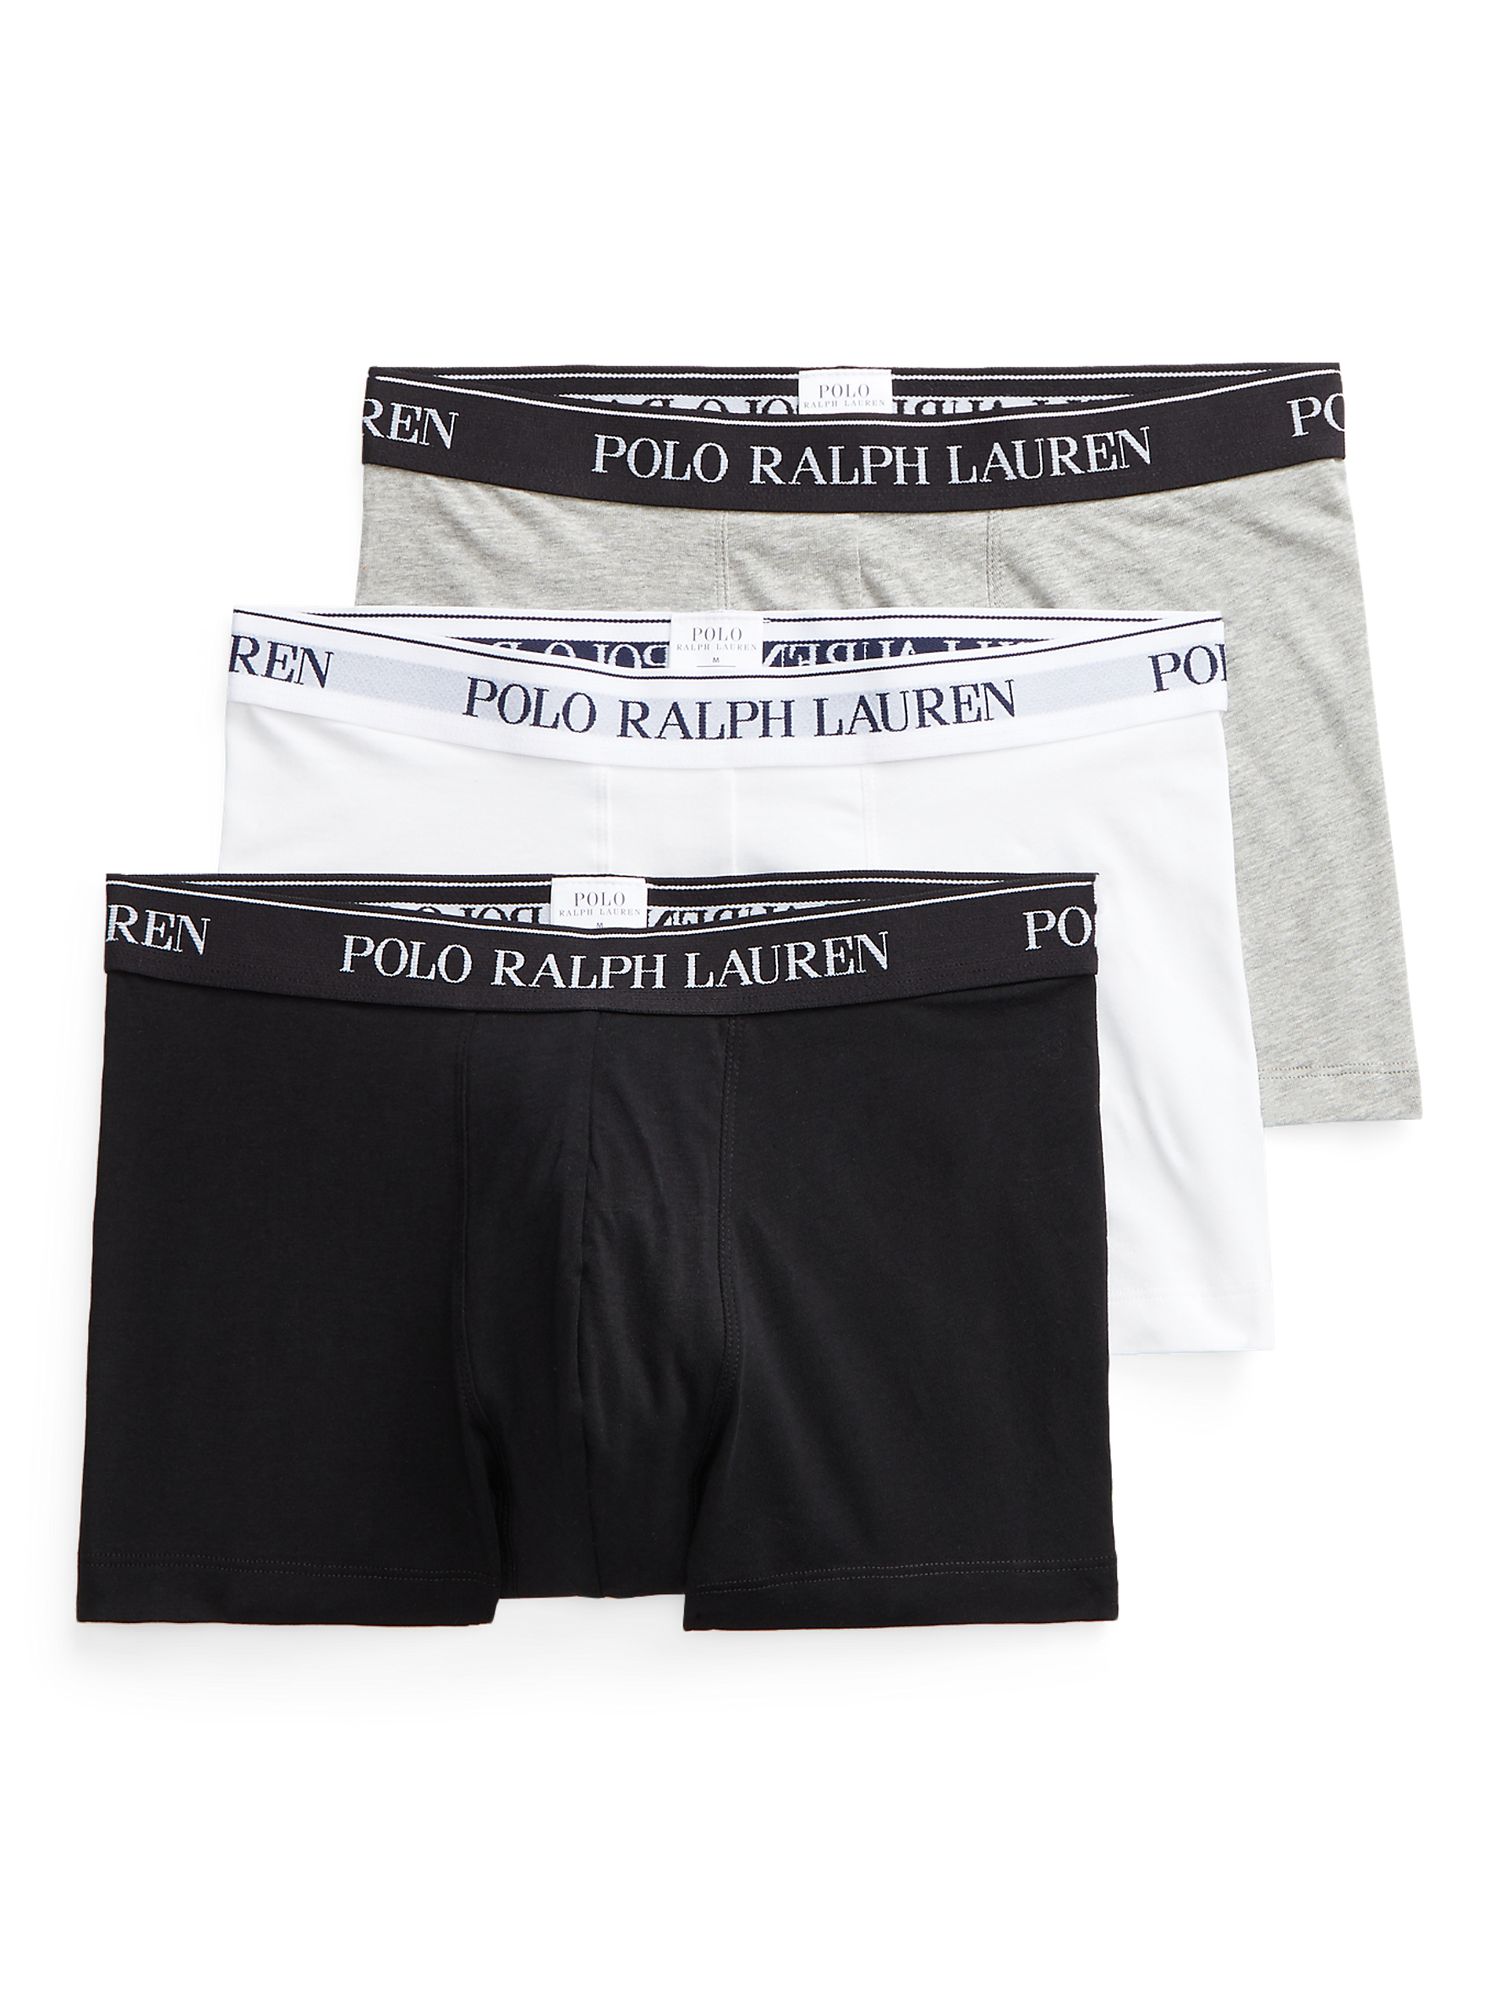 Polo Ralph Lauren Cotton Trunks, Pack of 3, Black/Grey/White at John ...